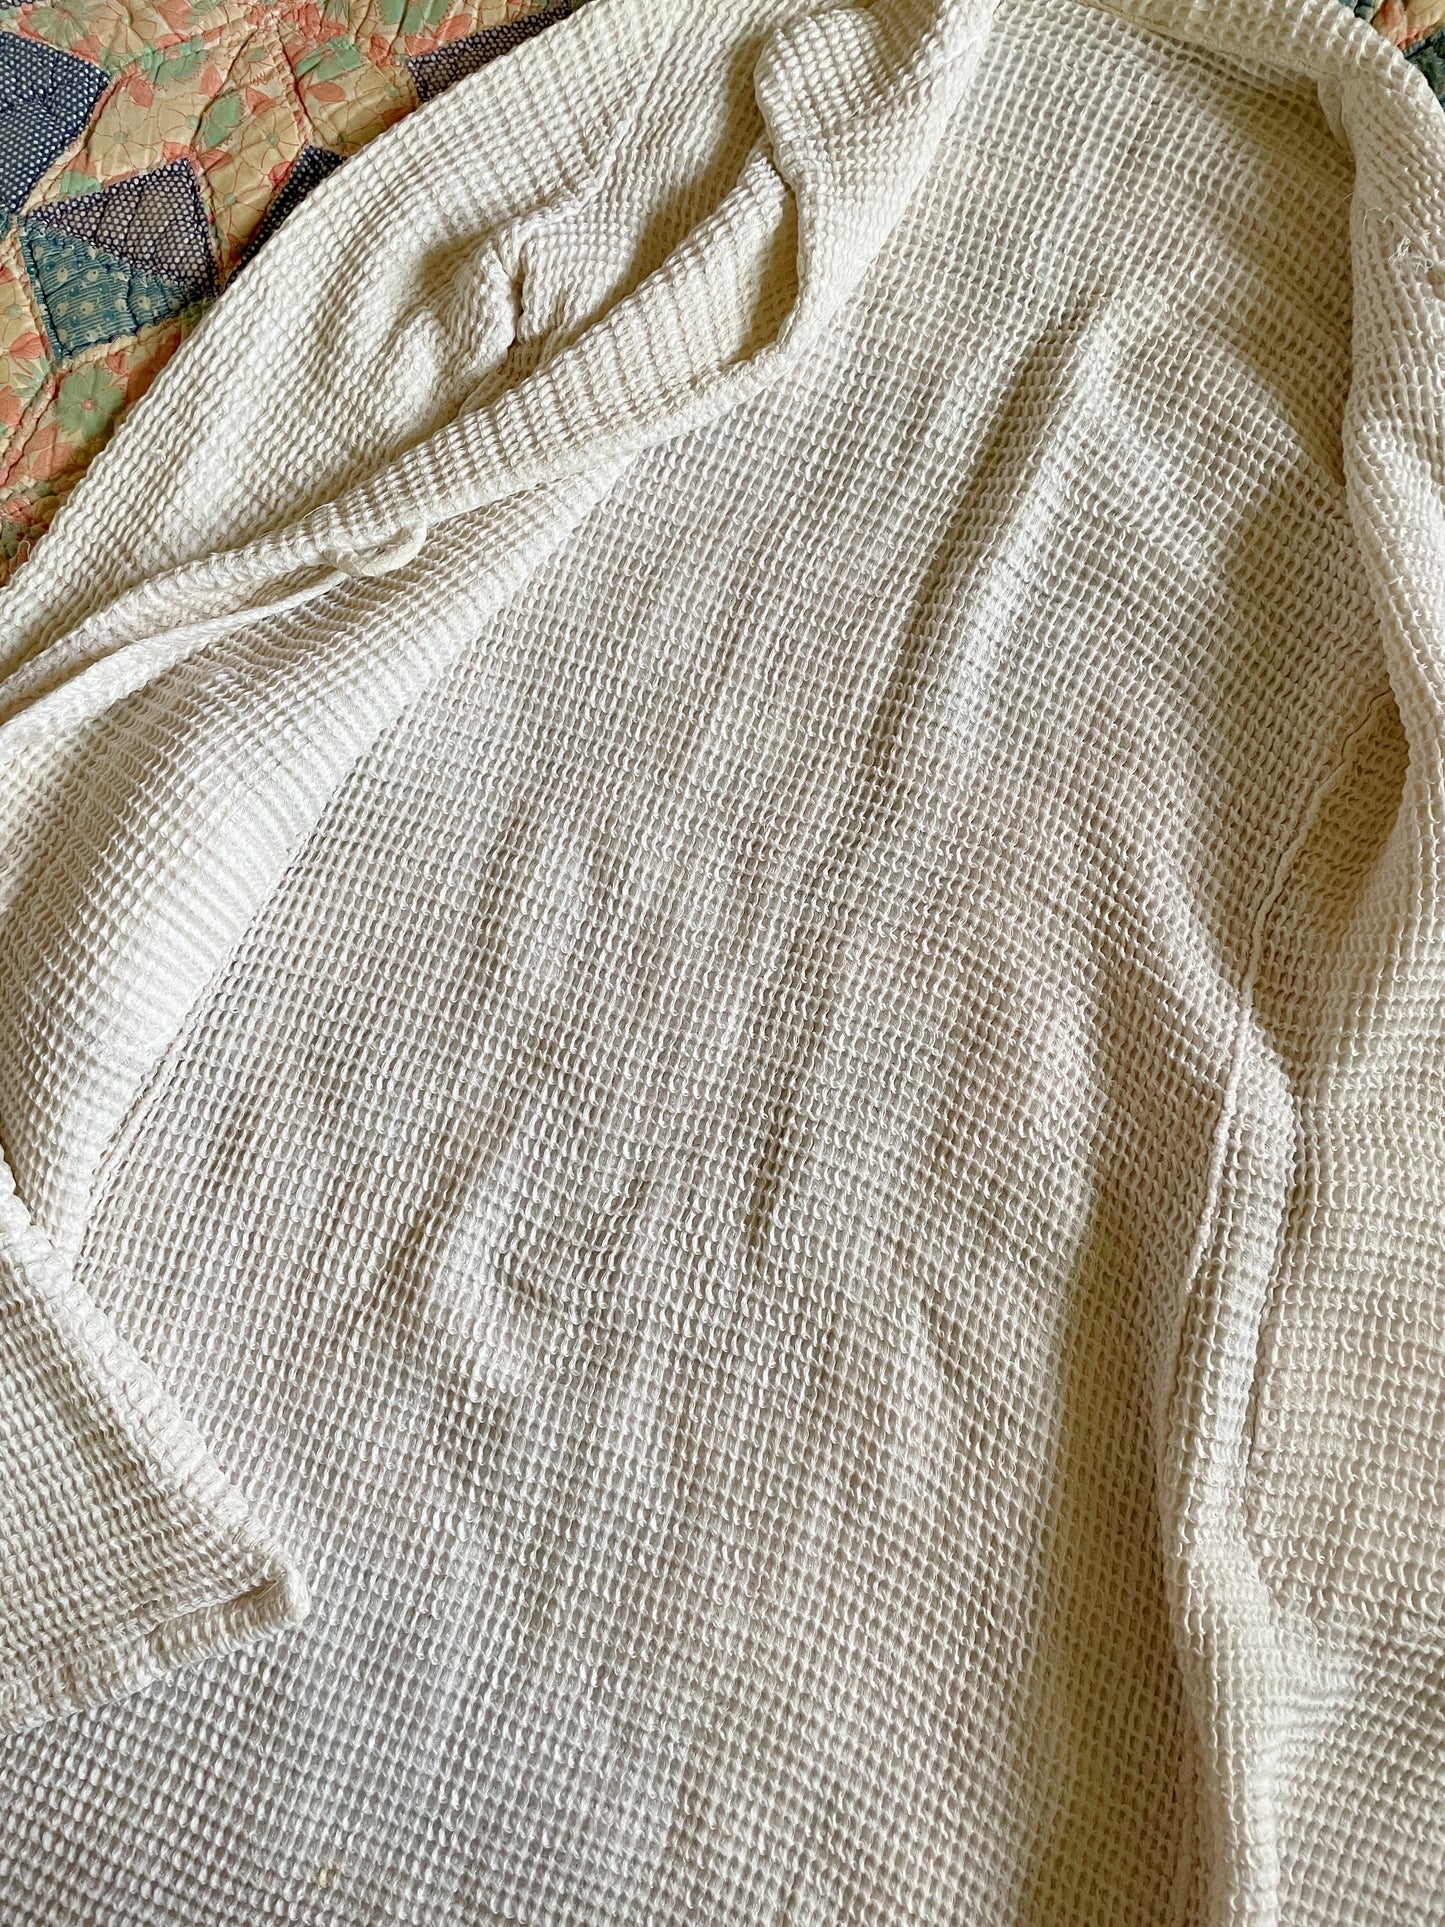 1920s White Waffle Knit Cardigan Jacket